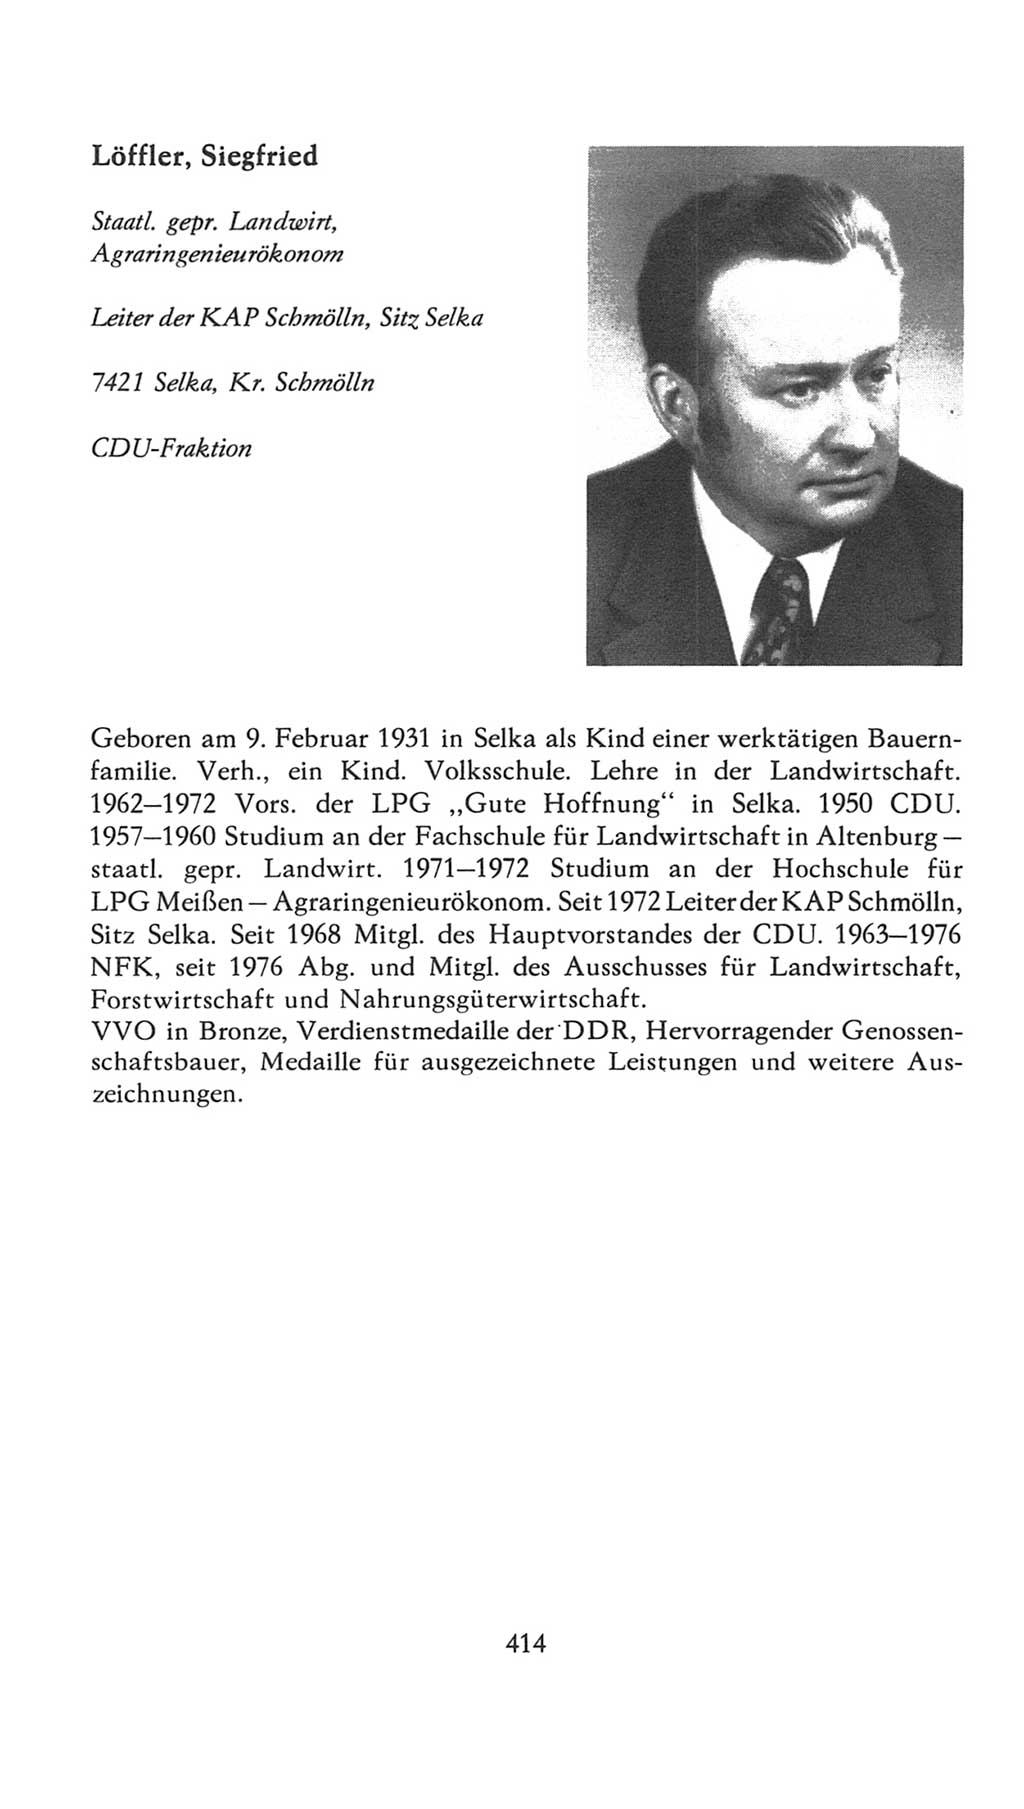 Volkskammer (VK) der Deutschen Demokratischen Republik (DDR), 7. Wahlperiode 1976-1981, Seite 414 (VK. DDR 7. WP. 1976-1981, S. 414)